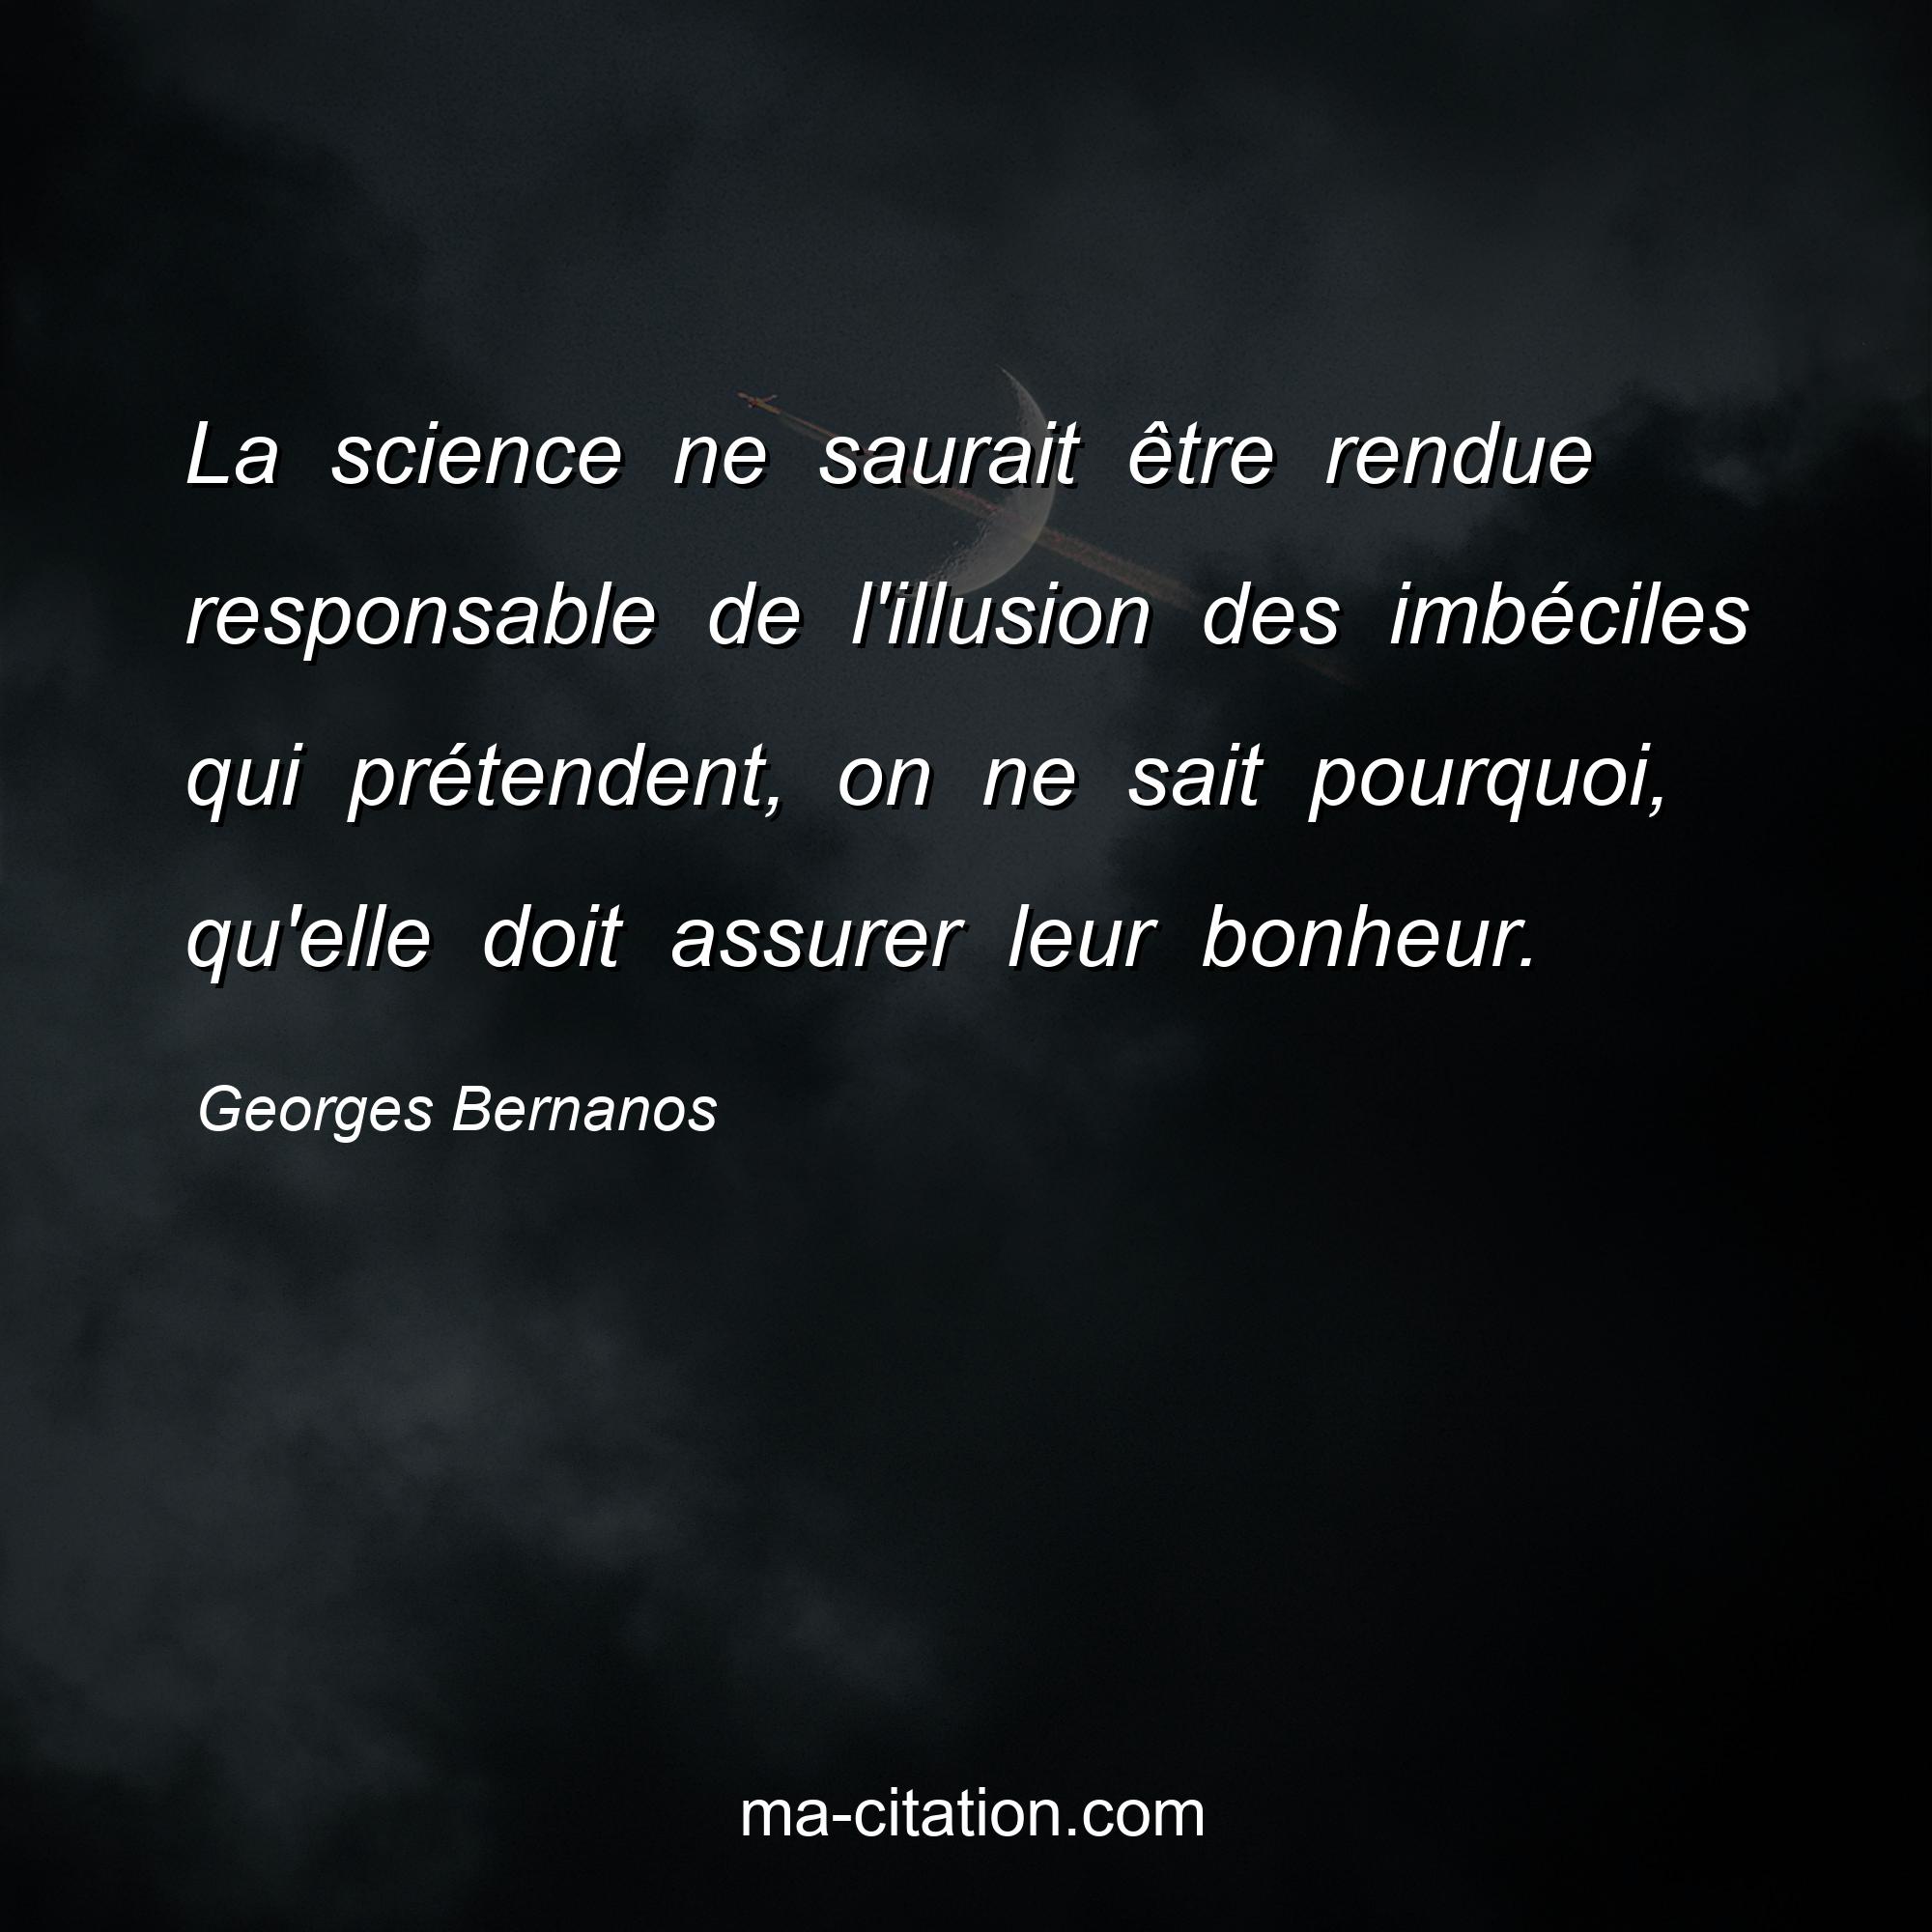 Georges Bernanos : La science ne saurait être rendue responsable de l'illusion des imbéciles qui prétendent, on ne sait pourquoi, qu'elle doit assurer leur bonheur.